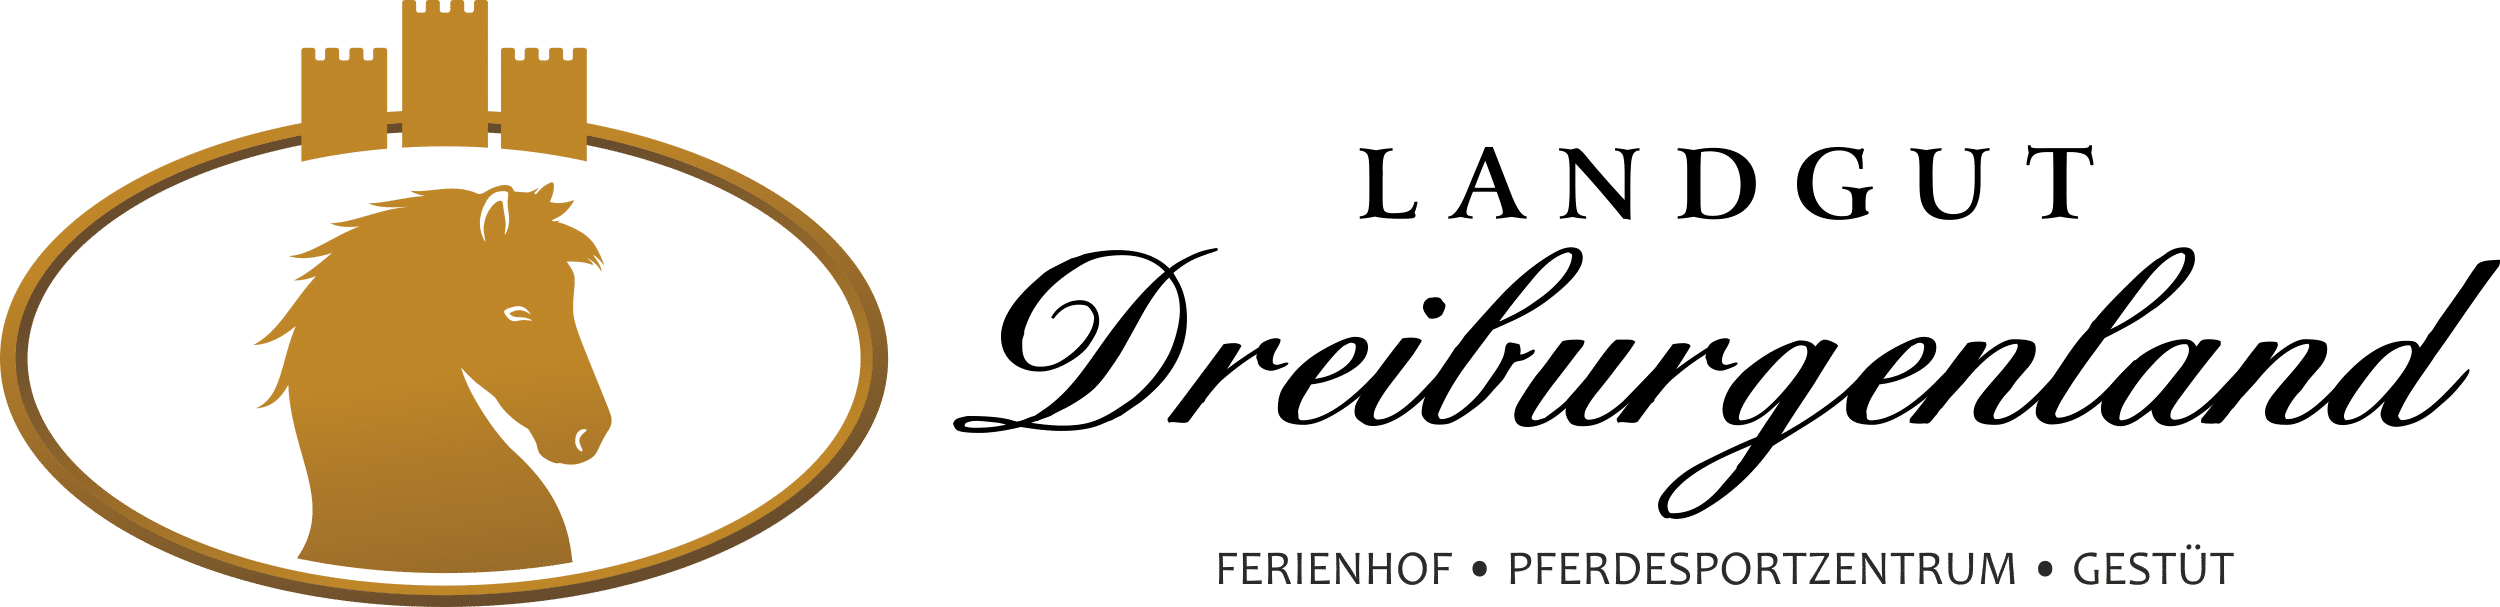 Ferienhof, Pferdesportzentrum und Gestüt "Landgut Dreiburgenland" | Reitstunden auf dem Ferienhof Landgut Dreiburgenland